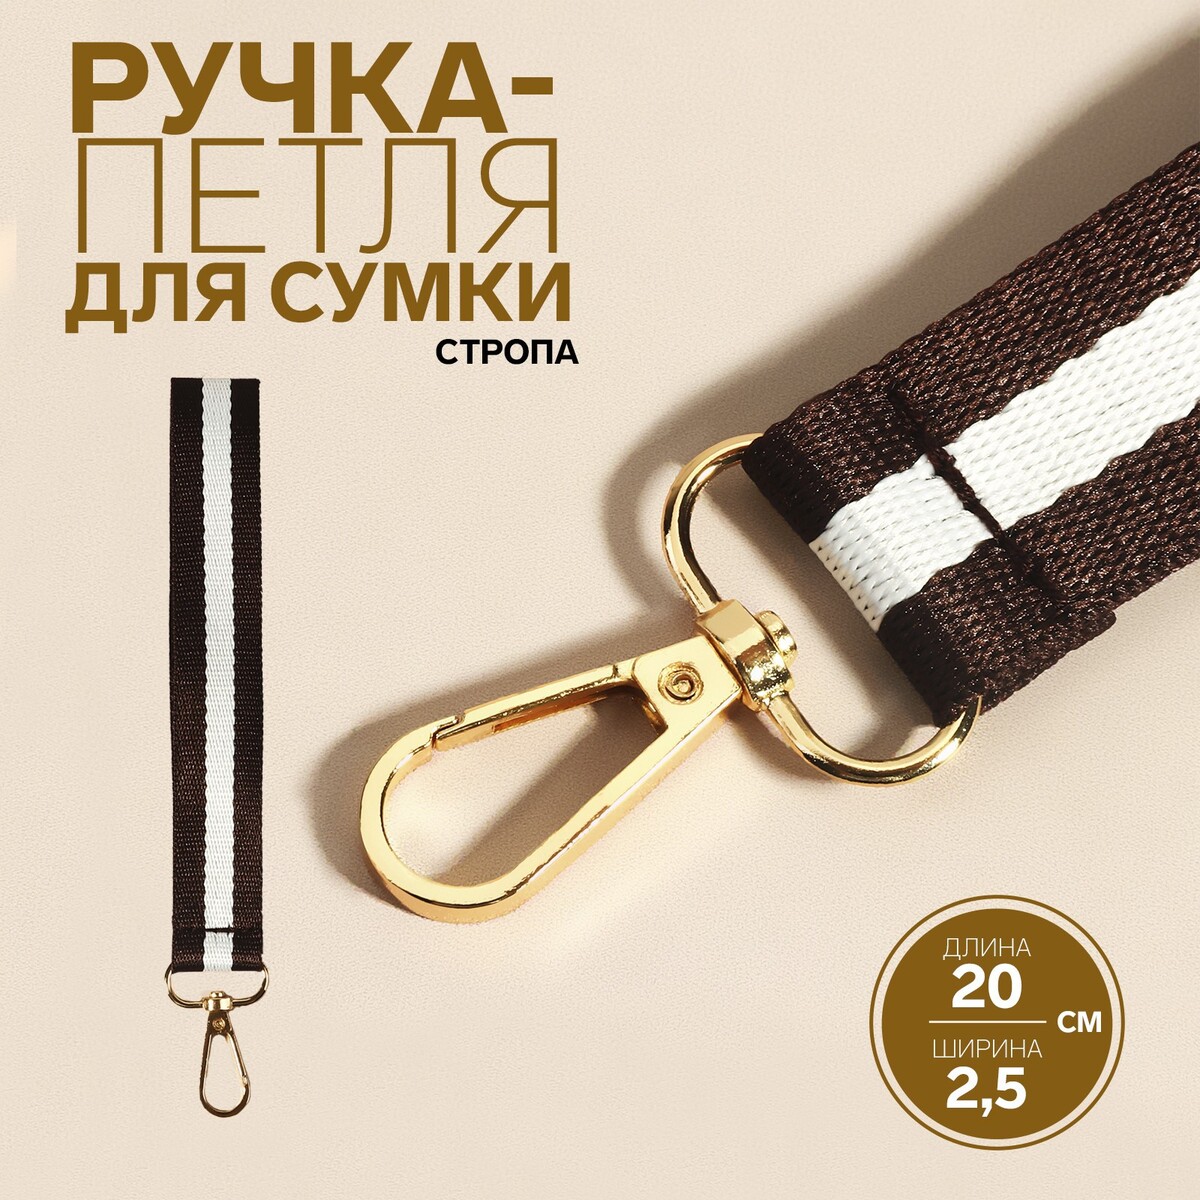 Ручка-петля для сумки, стропа, 20 × 2,5 см, цвет коричневый/белый косметичка на молнии белый коричневый